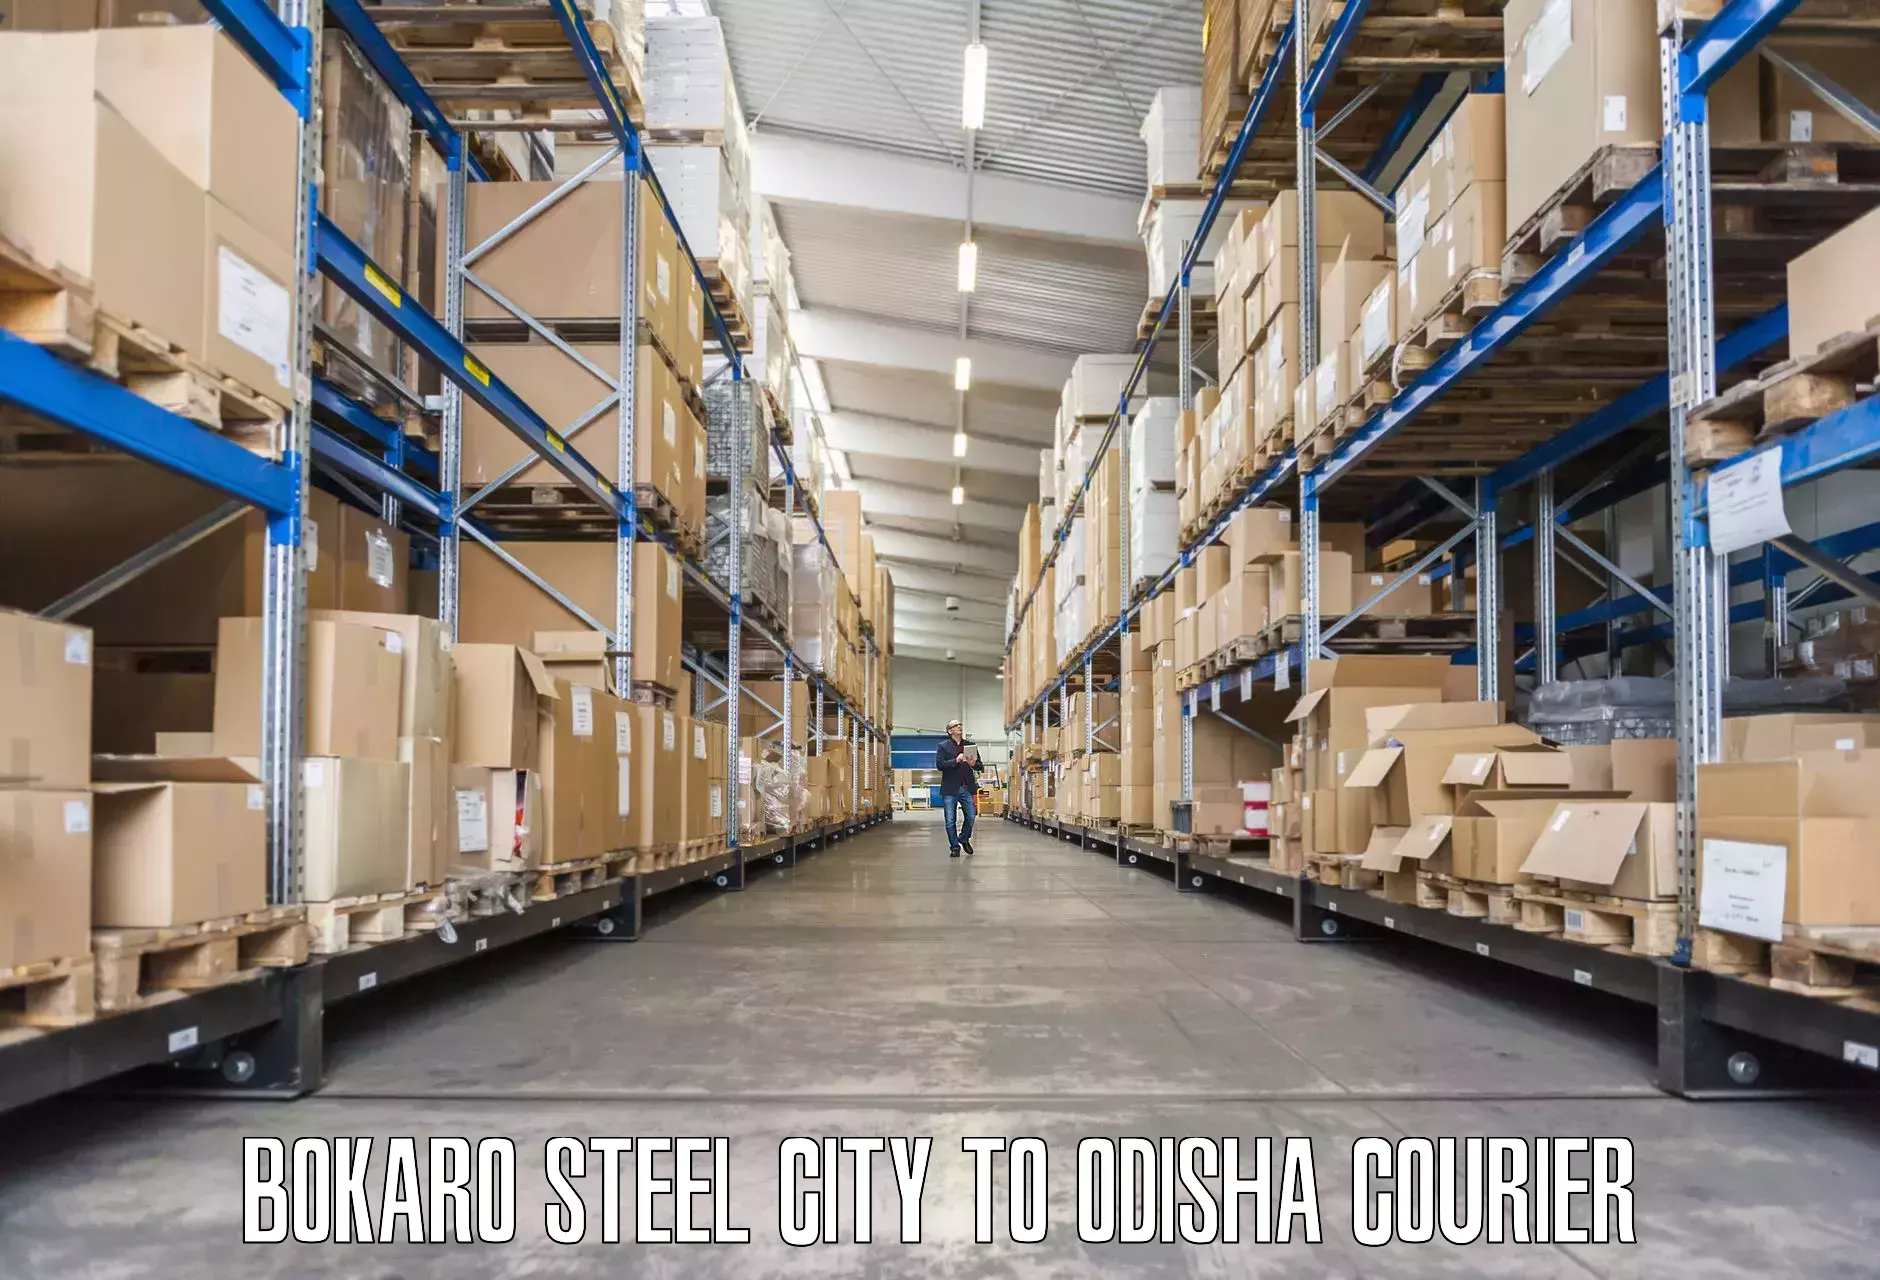 Furniture moving and handling in Bokaro Steel City to Baleswar